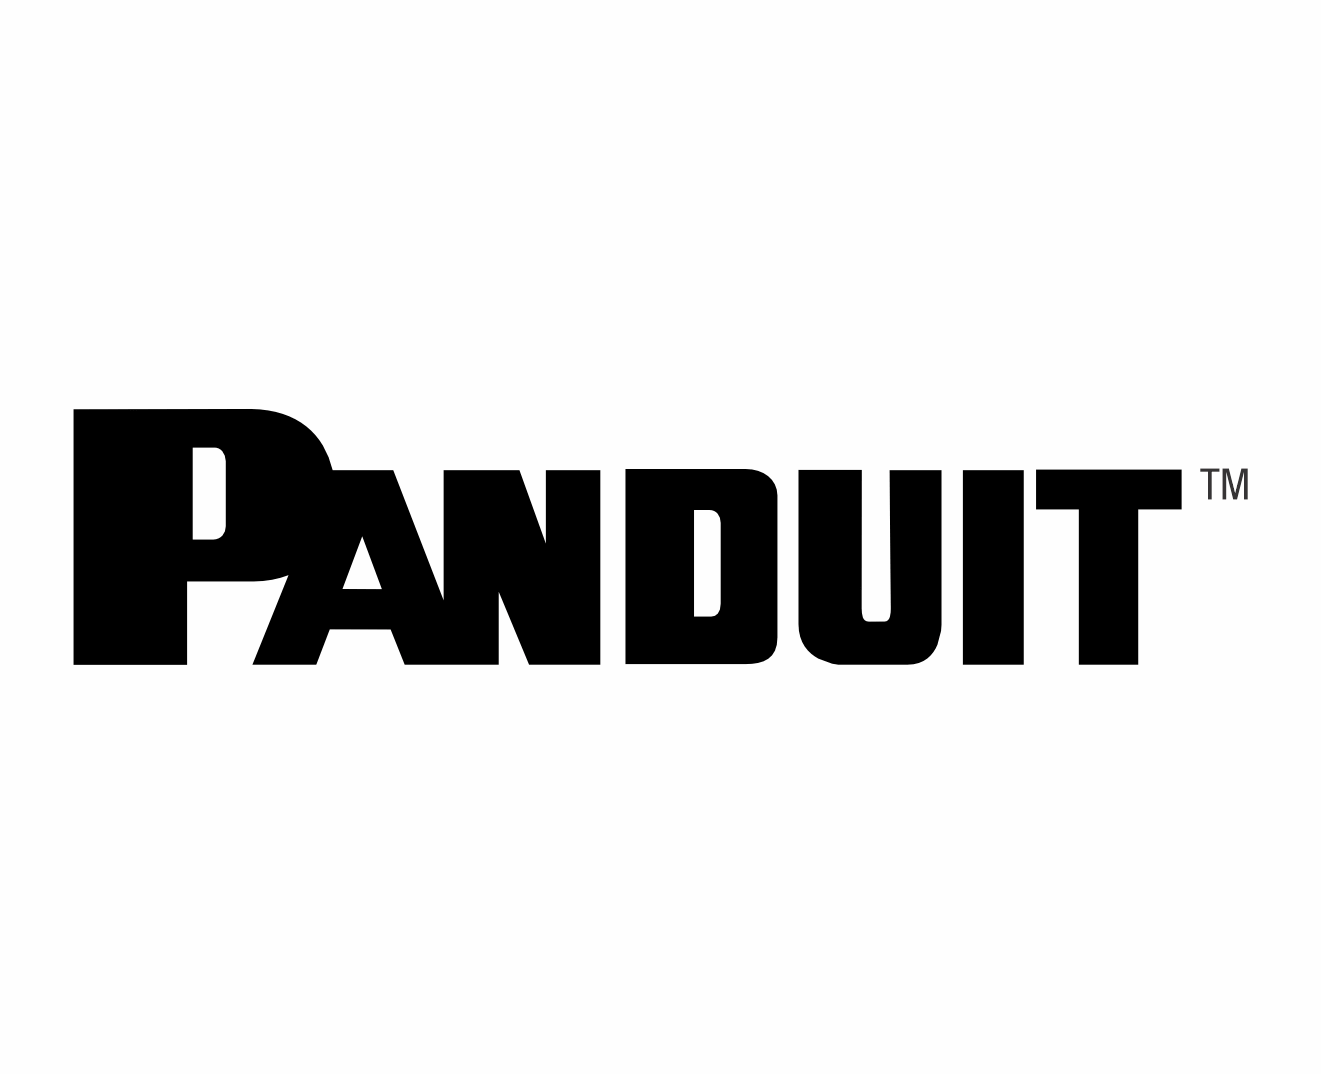 Panduit MEXDC Logo